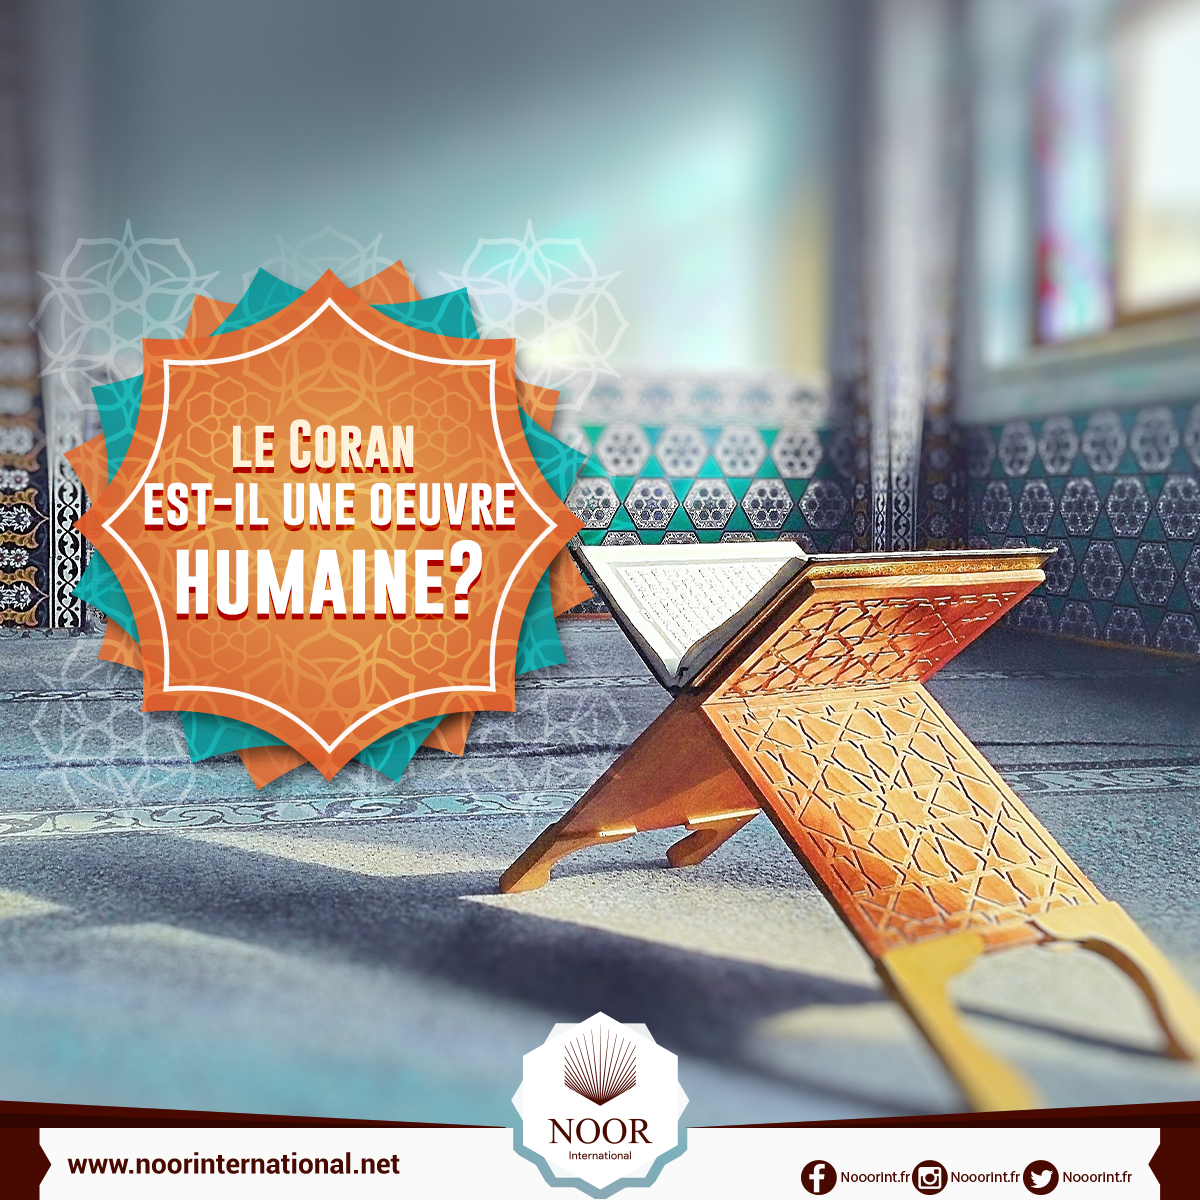 le Coran est-il une oeuvre humaine?